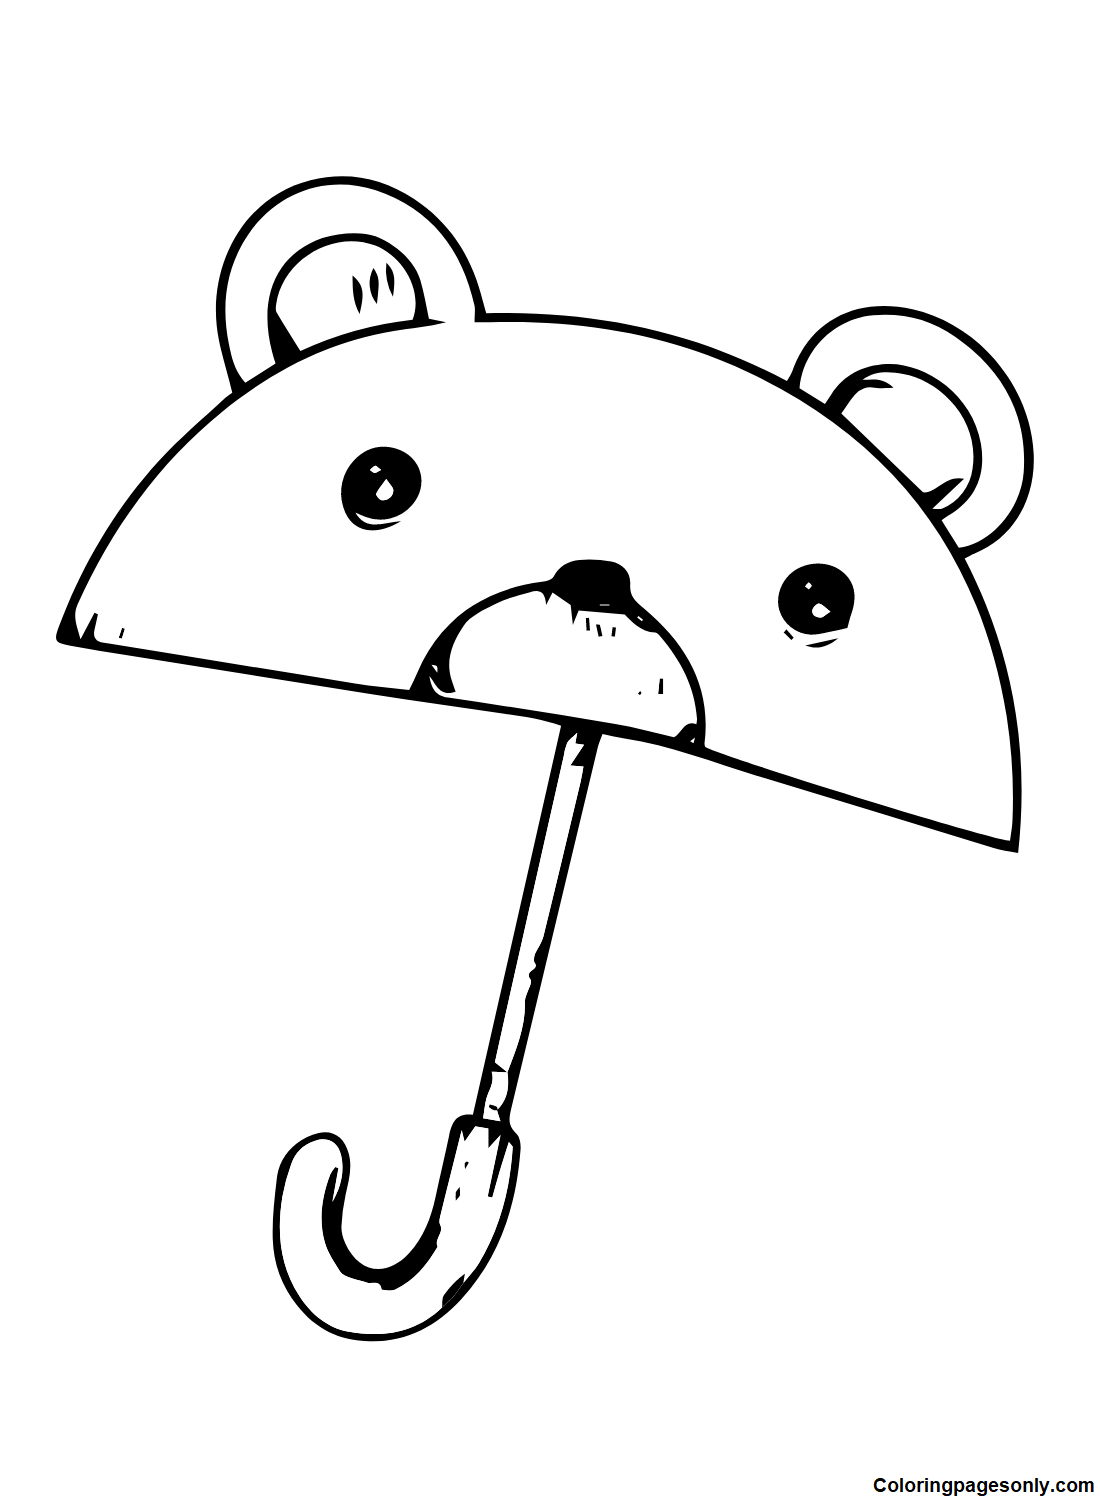 Медведь-зонтик из Umbrella